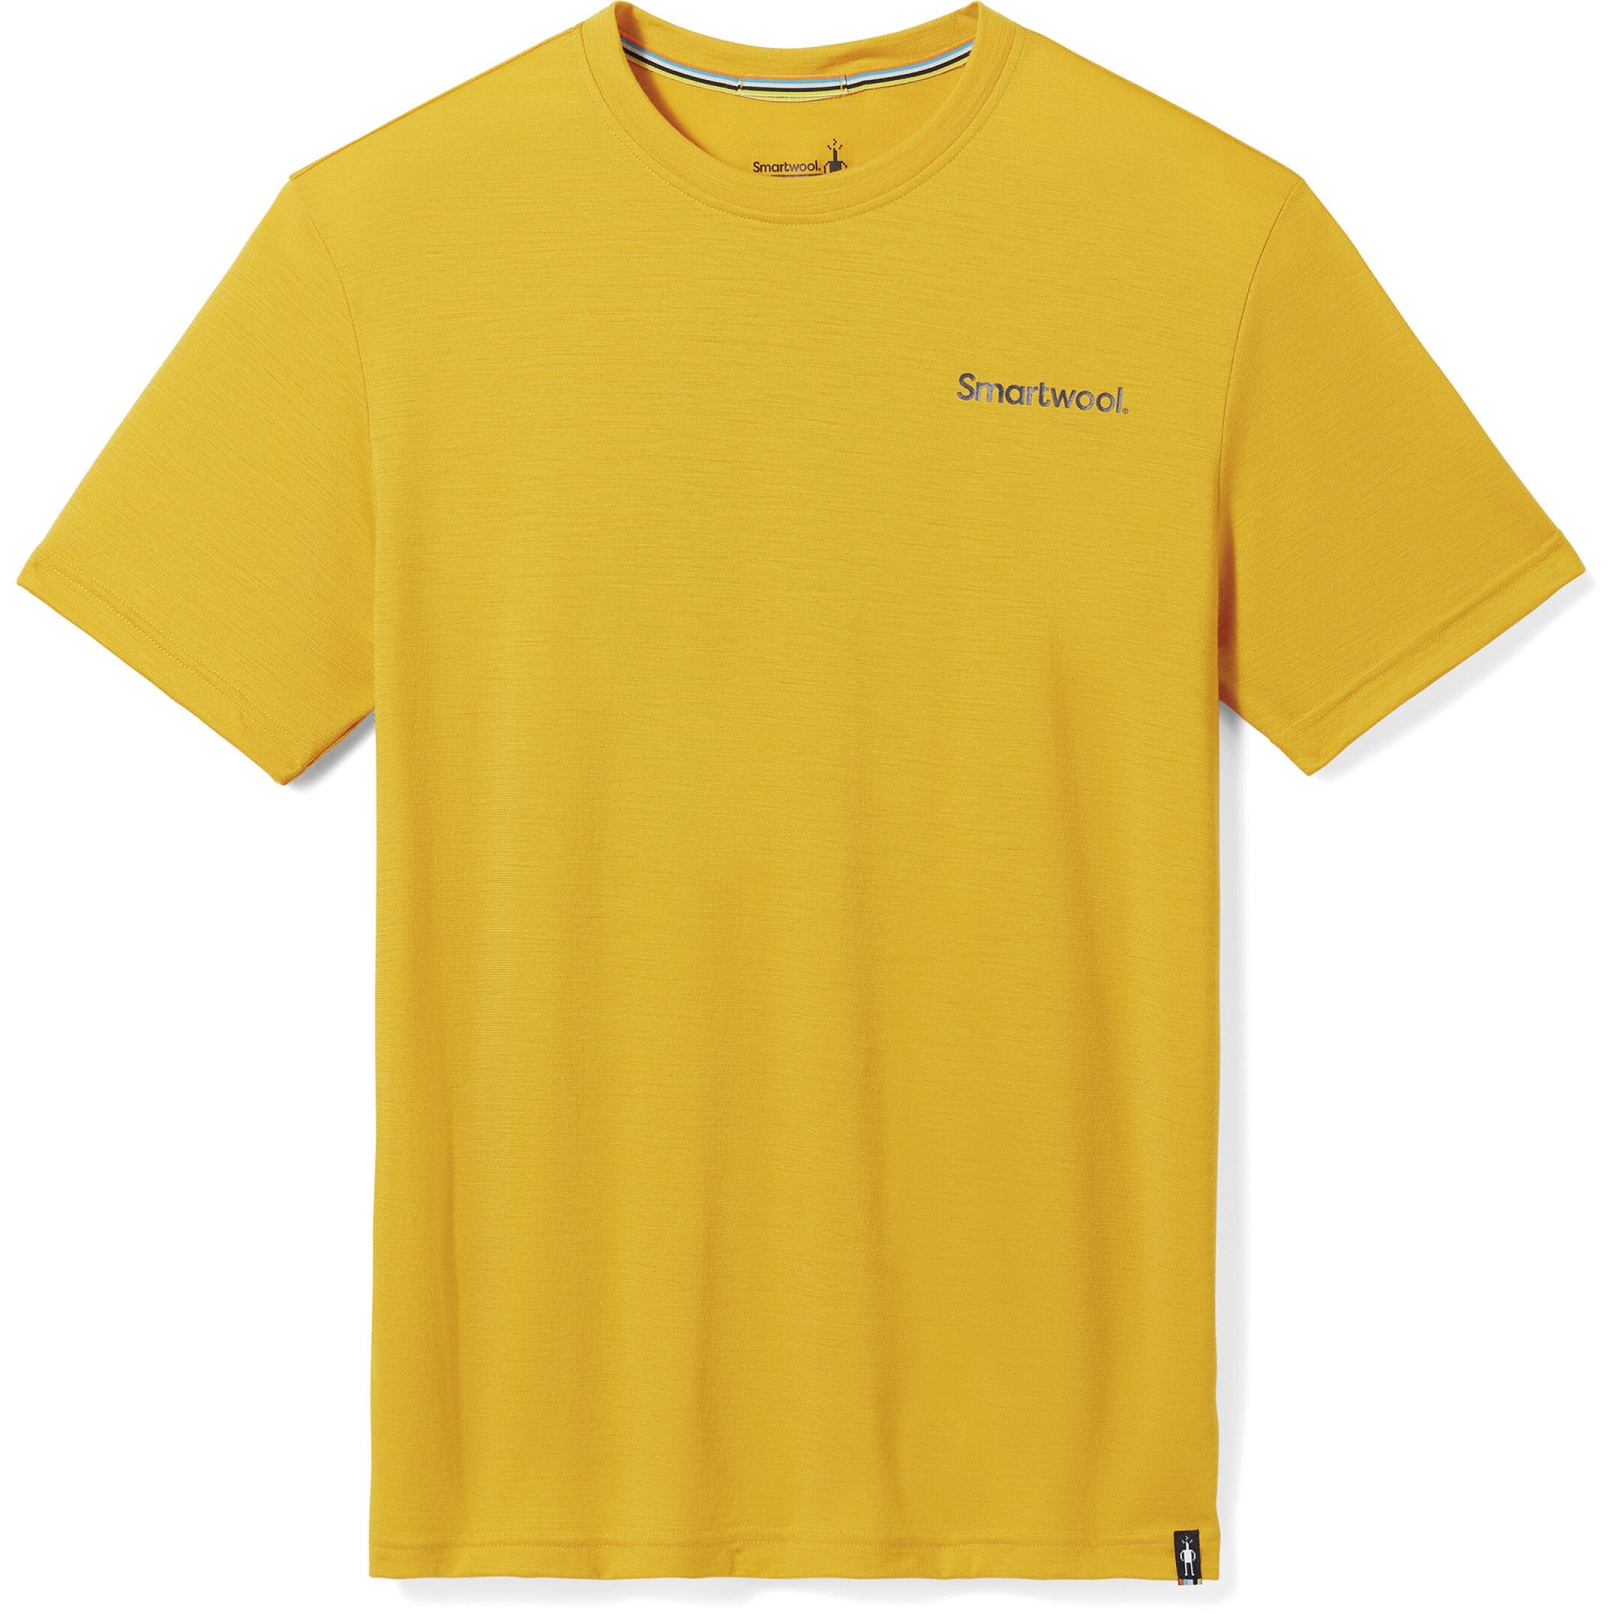 Produktbild von SmartWool Dawn Rise Graphic T-Shirt - K11 honey gold